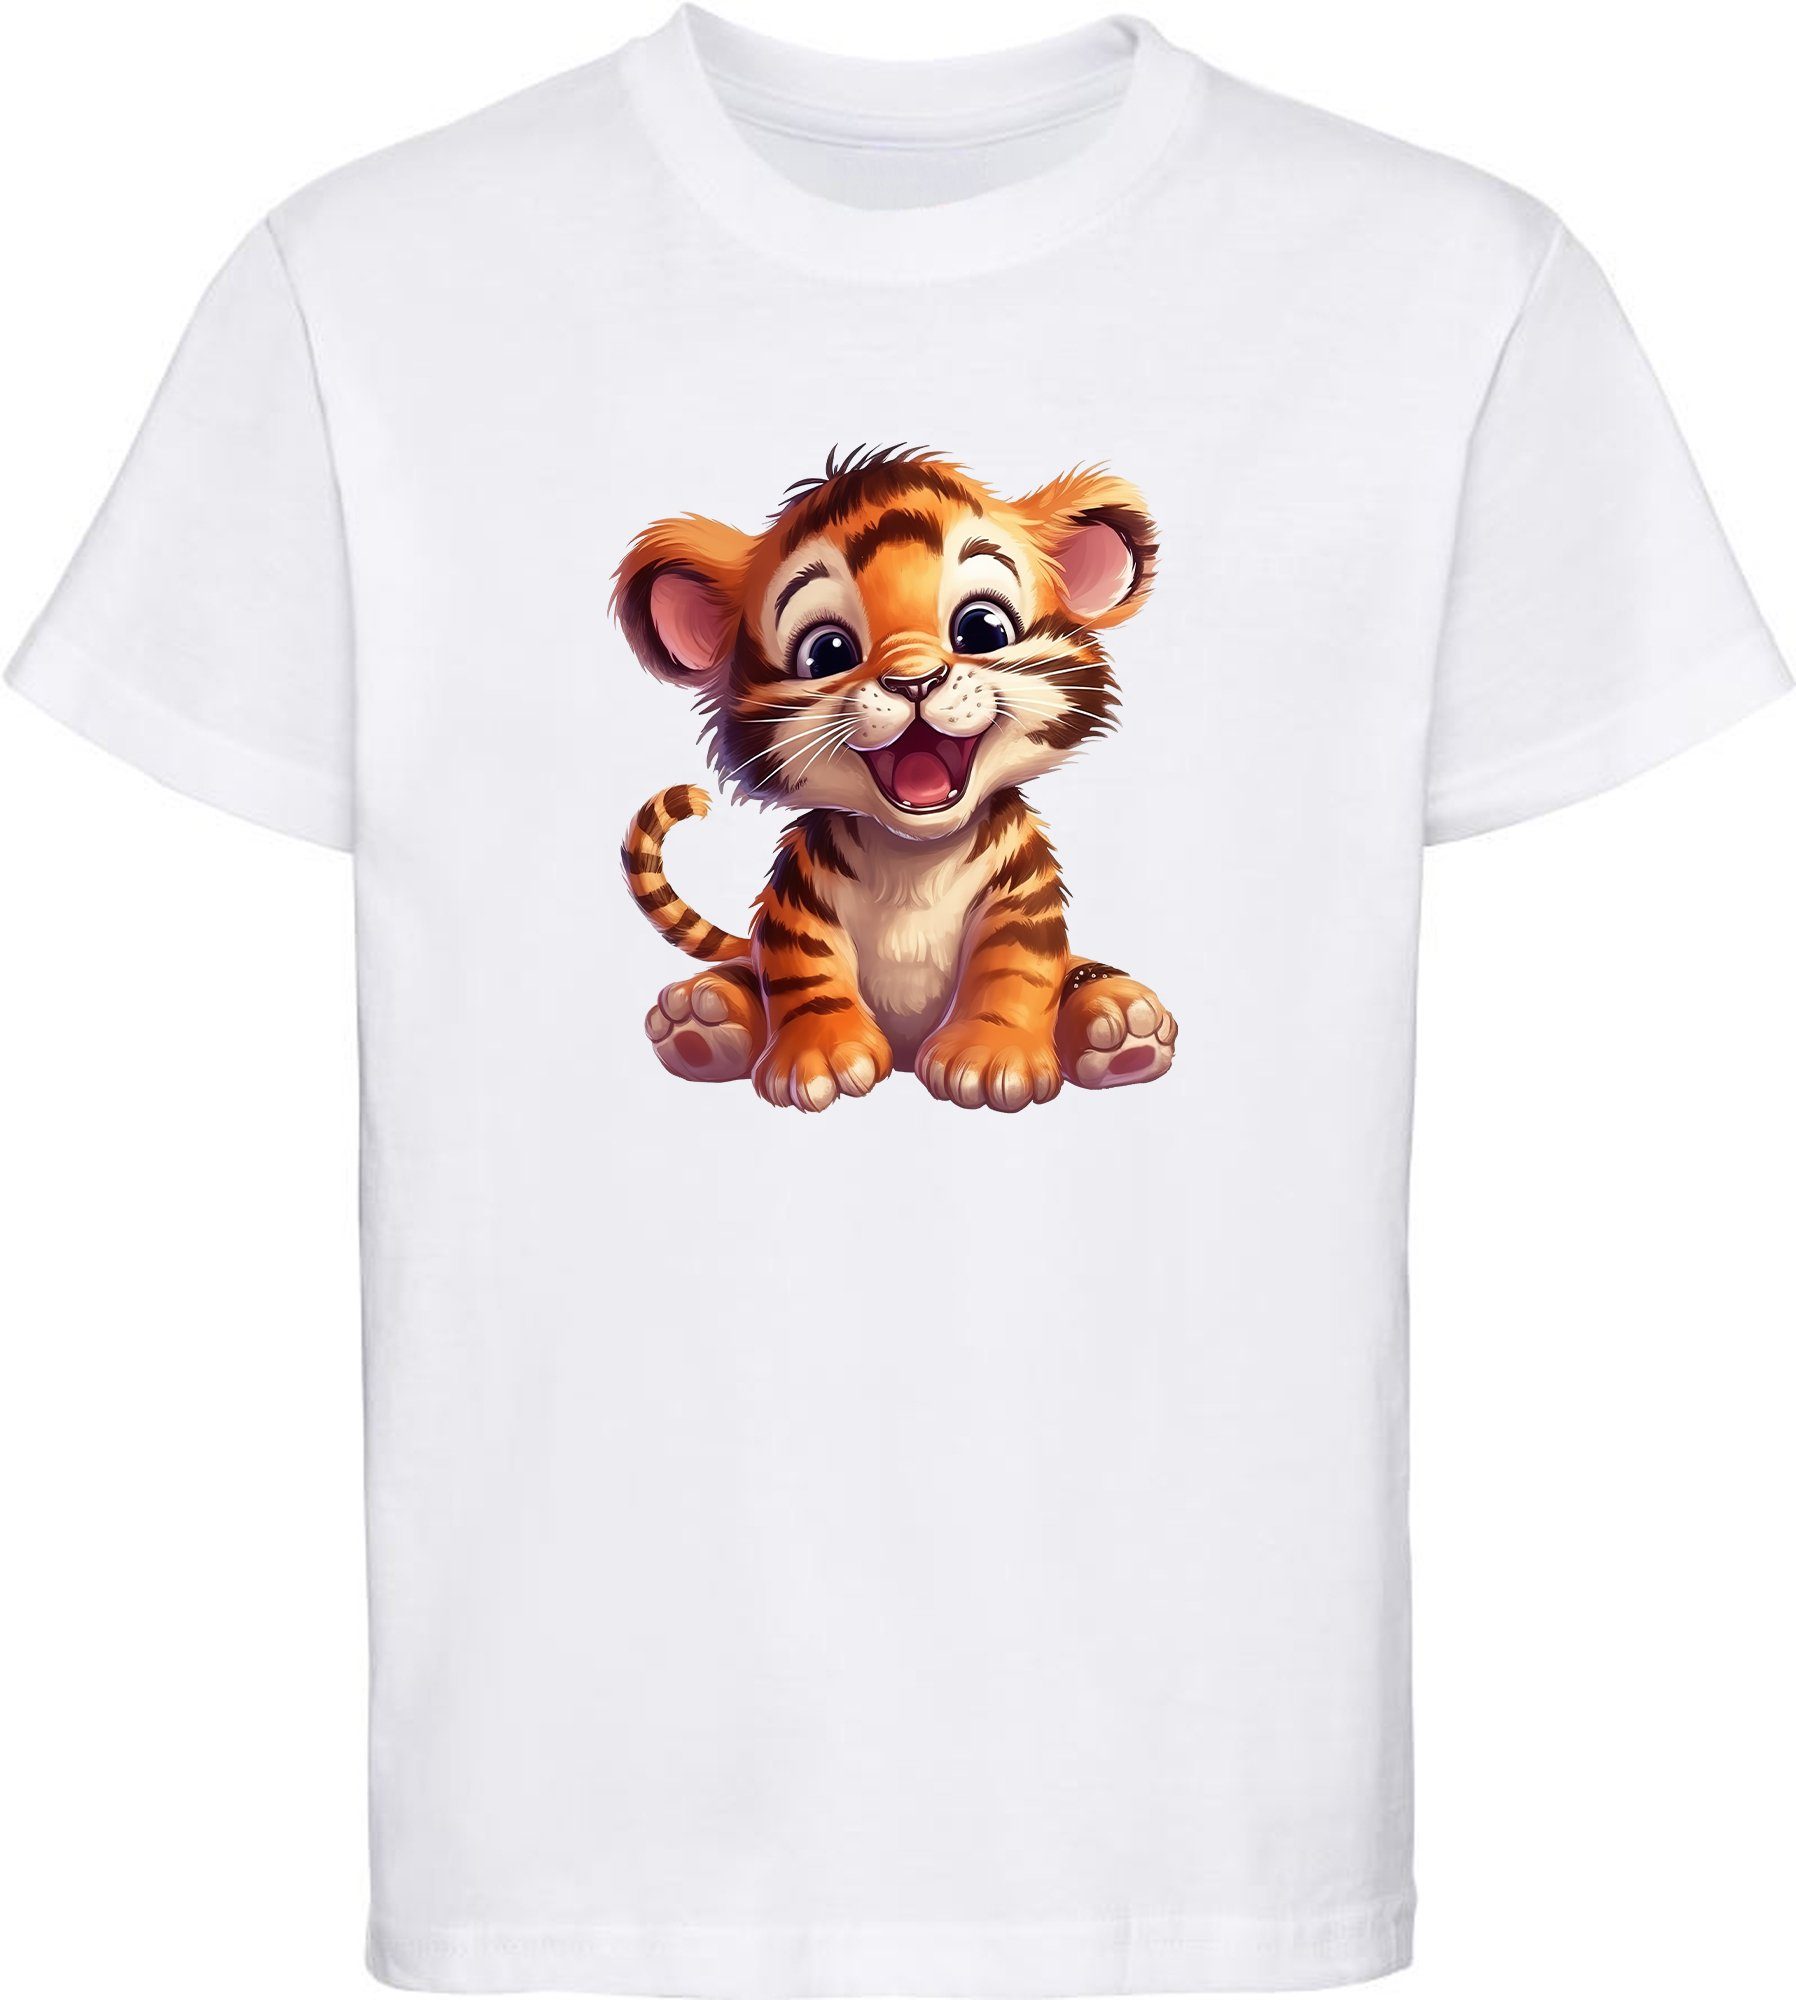 Baumwollshirt - Wildtier MyDesign24 i266 bedruckt Kinder Baby weiss Shirt mit Aufdruck, T-Shirt Print Tiger